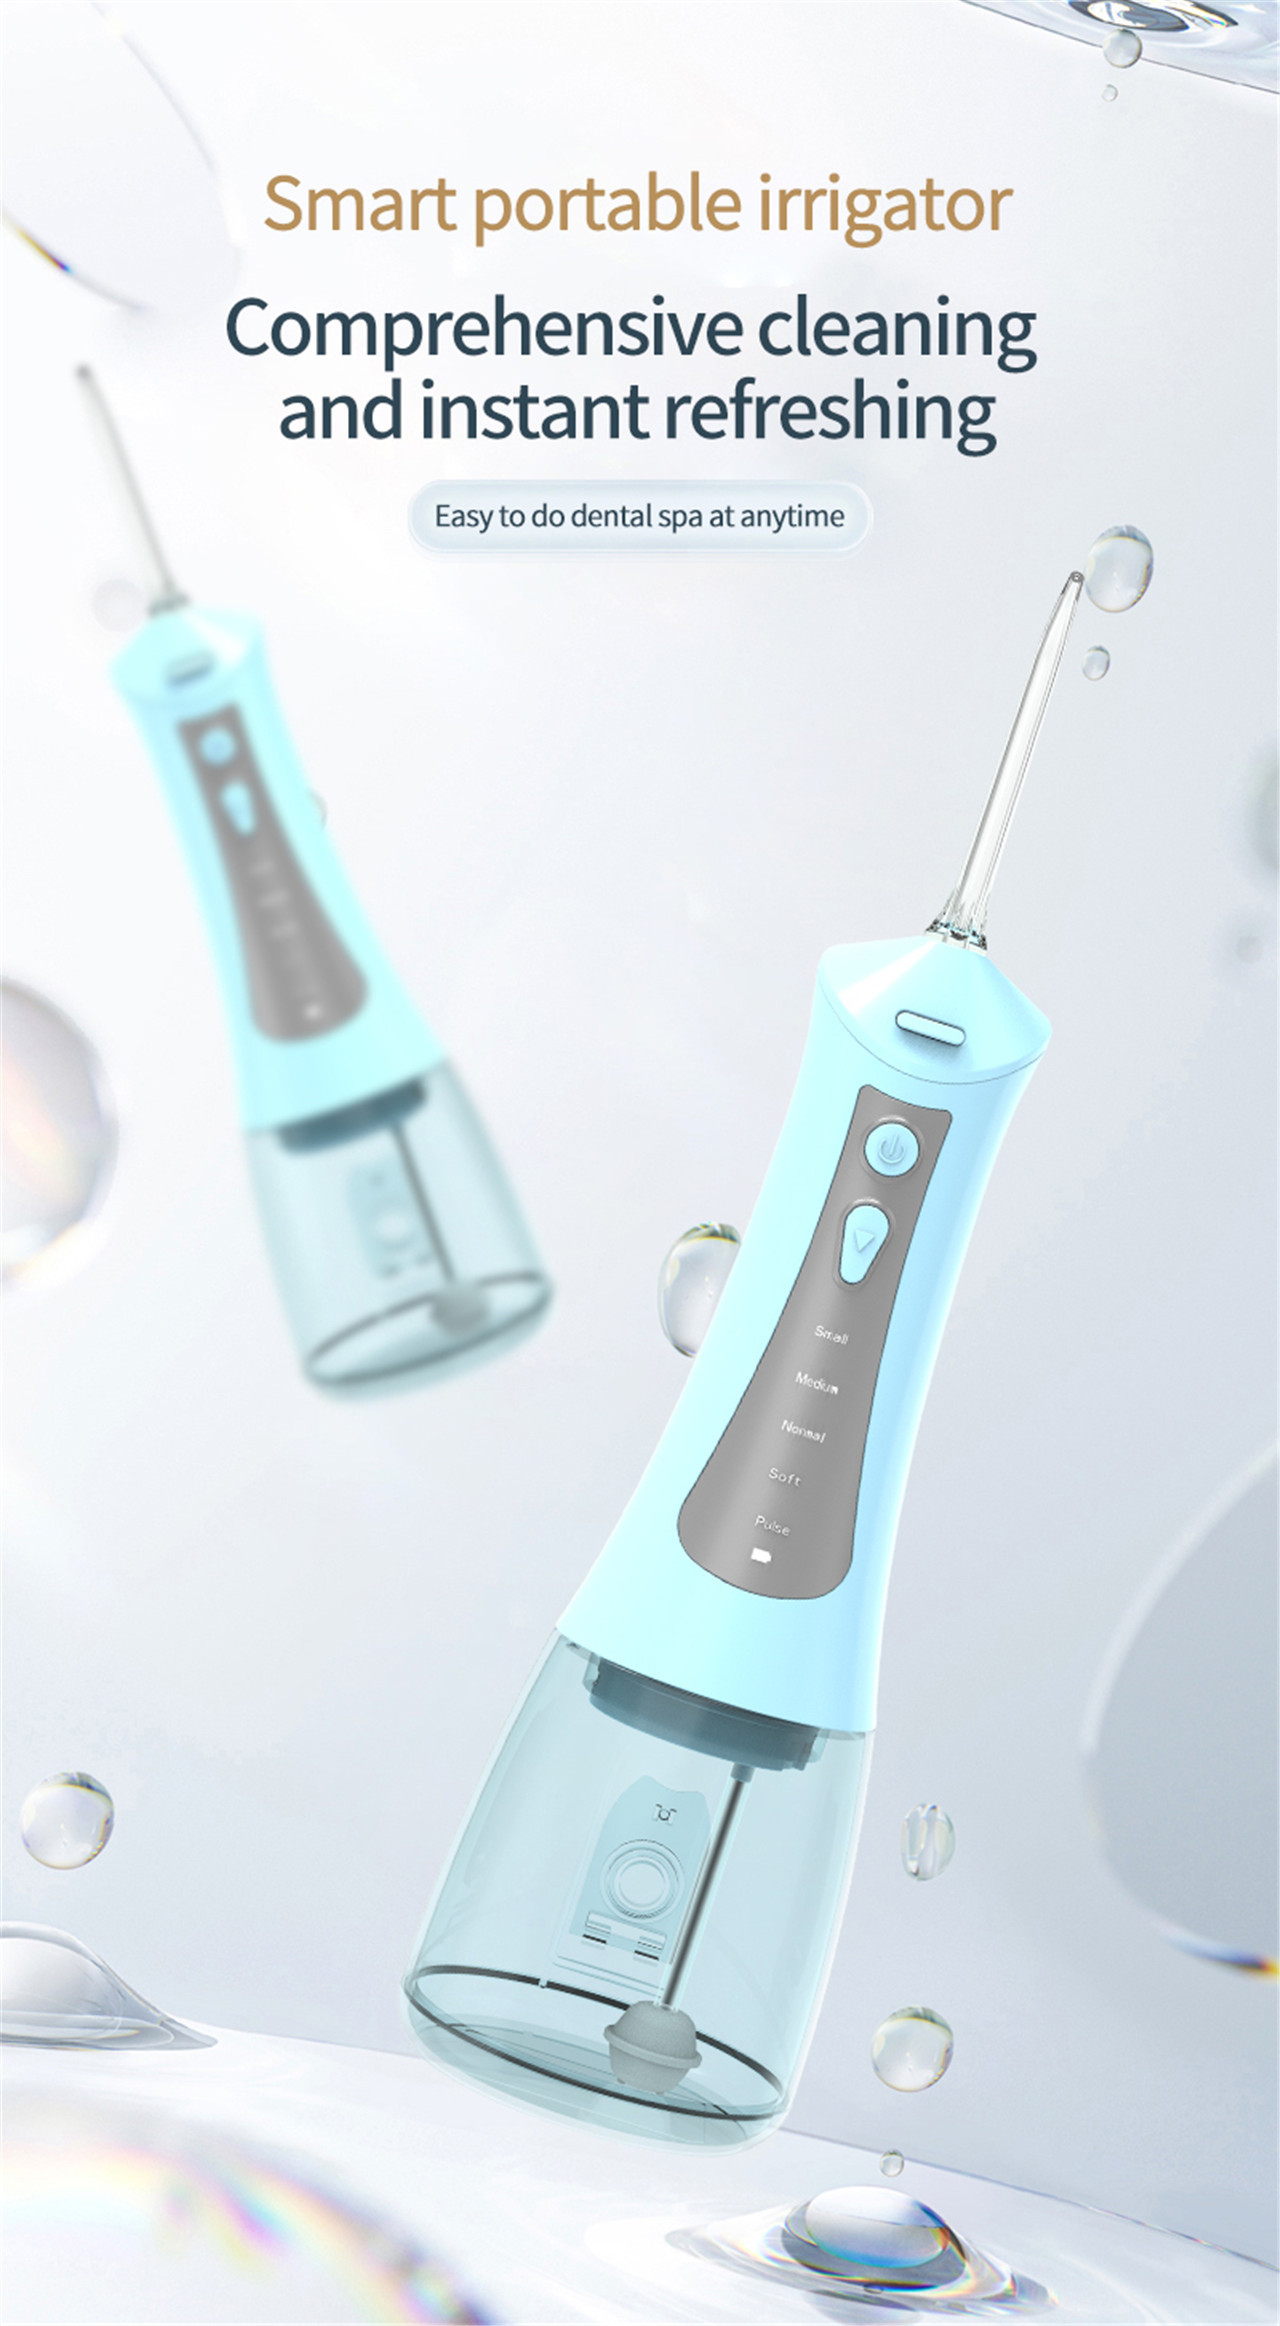 משקפת שיניים בלחץ גבוה לטיפול בפה מכשיר המים החשמלי הטוב ביותר (1)